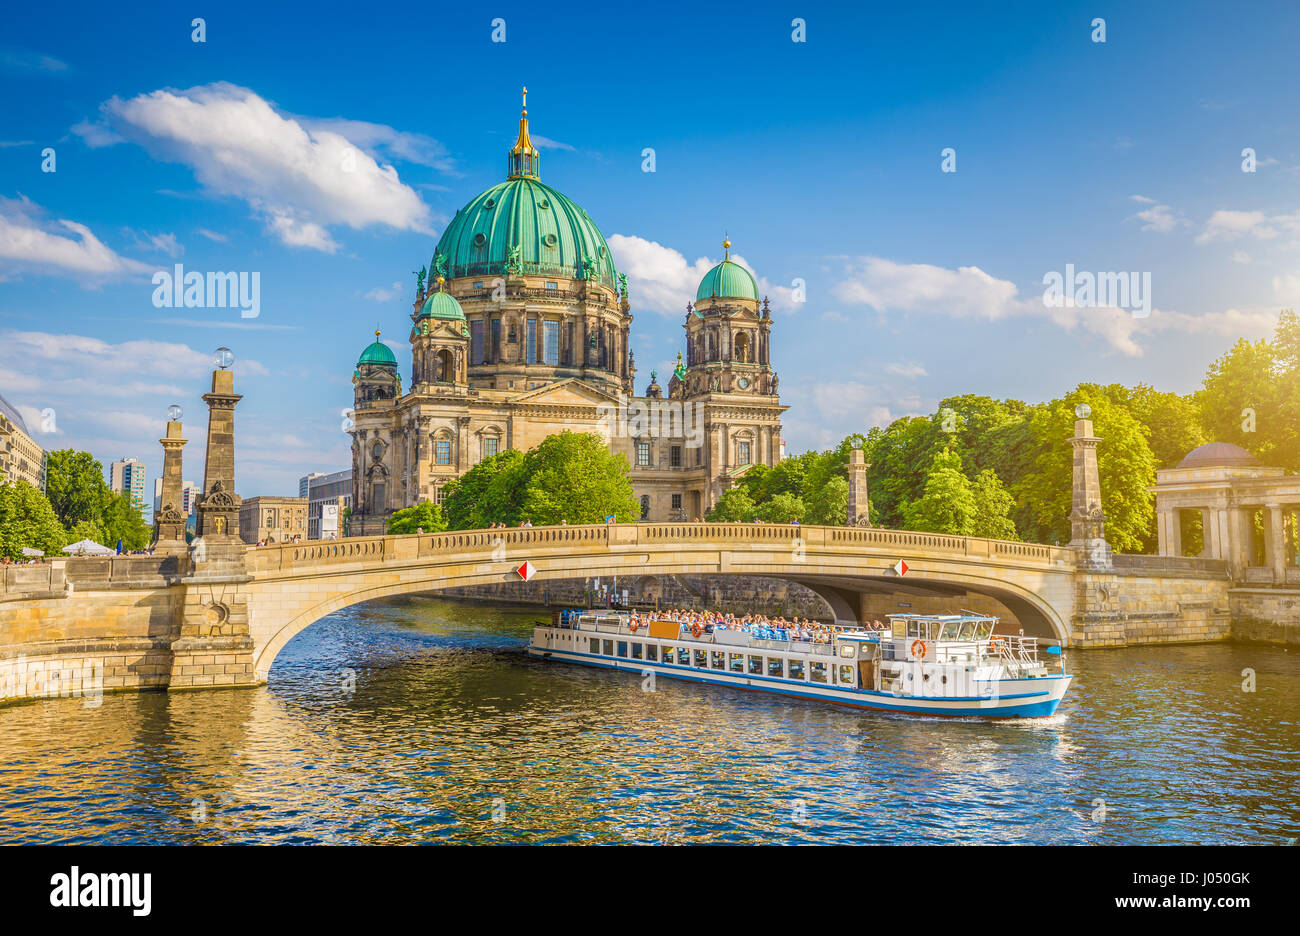 Schöne Aussicht auf historische Berliner Dom (Berliner Dom) an der berühmten Museumsinsel mit Schiff, vorbei an der Friedrichsbrucke Brücke an Spree bei Sonnenuntergang Stockfoto